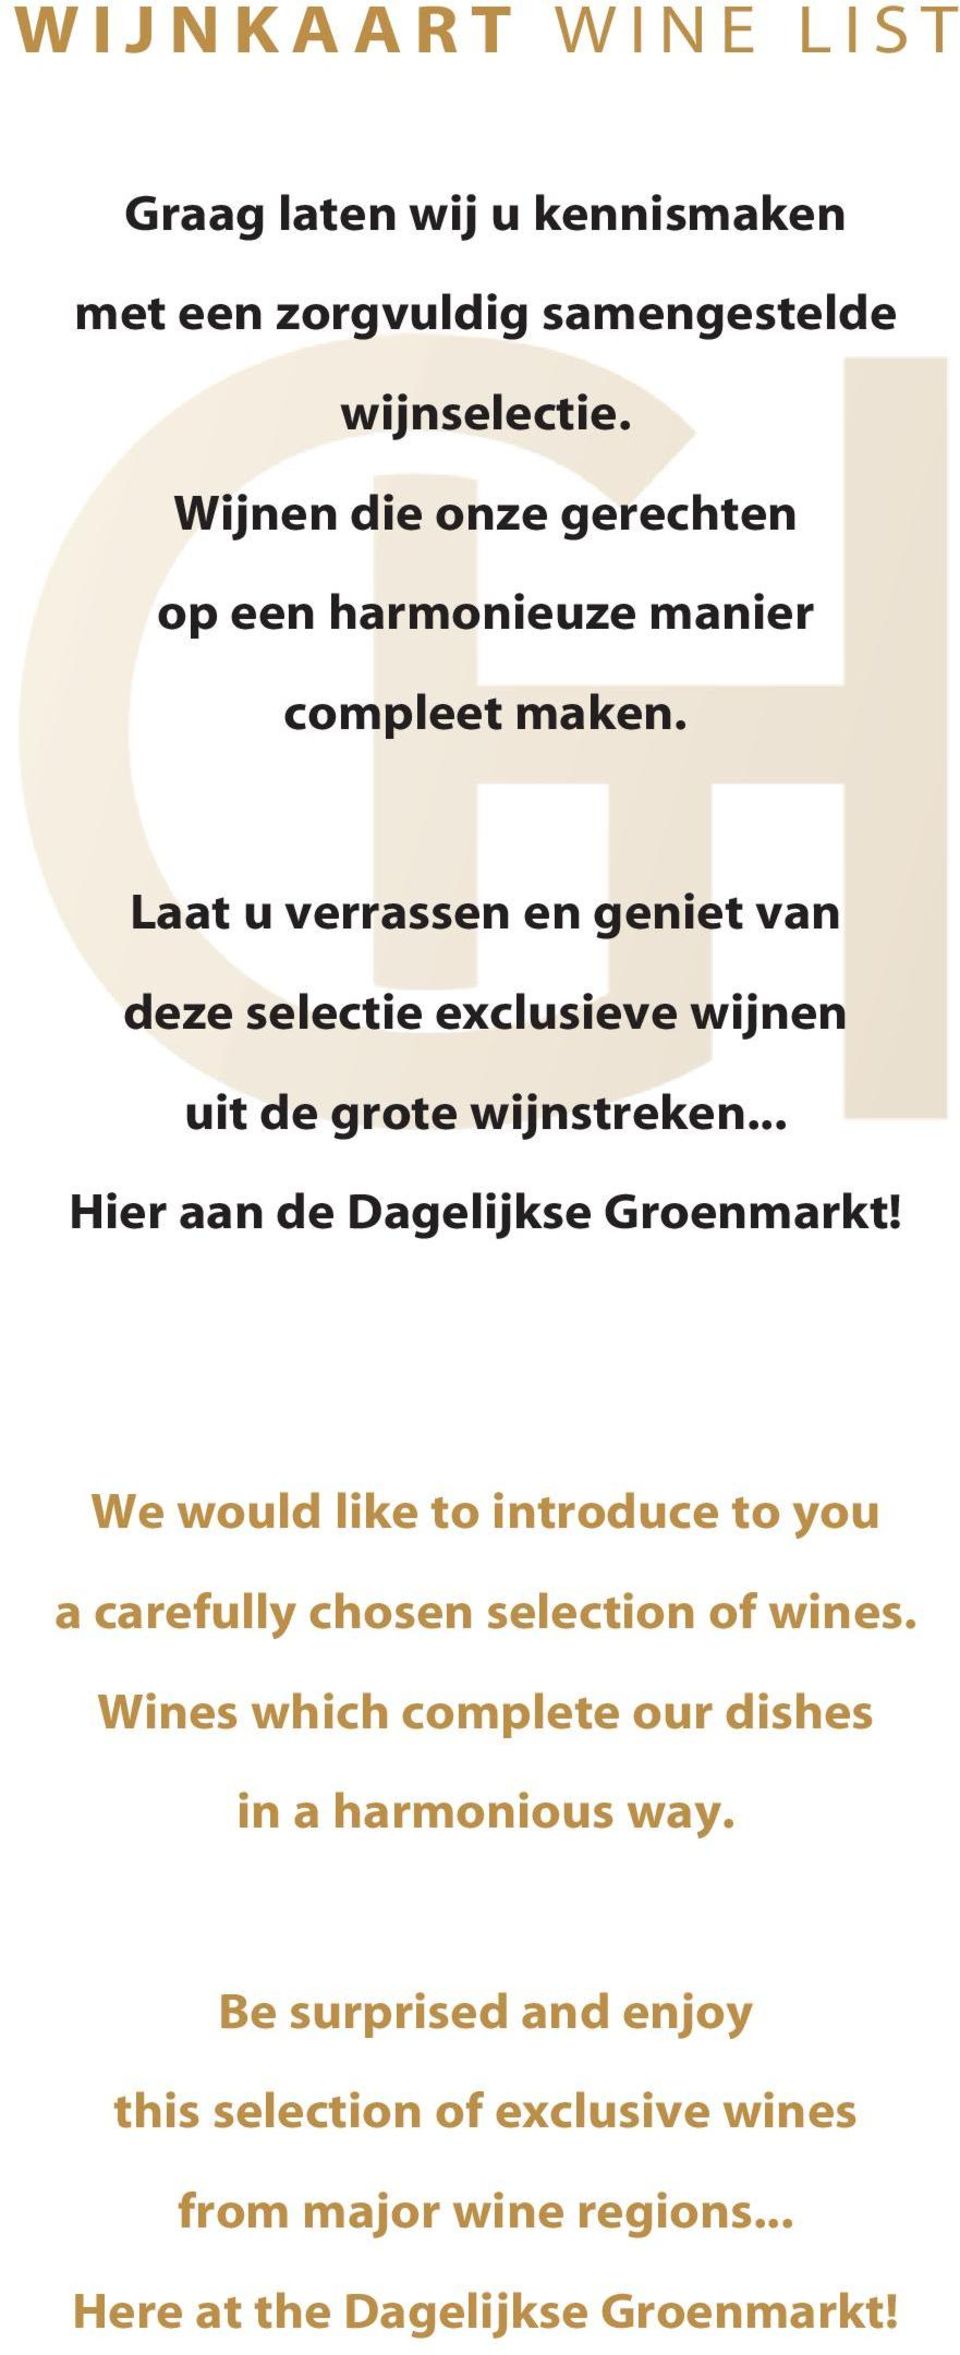 Laat u verrassen en geniet van deze selectie exclusieve wijnen uit de grote wijnstreken... Hier aan de Dagelijkse Groenmarkt!